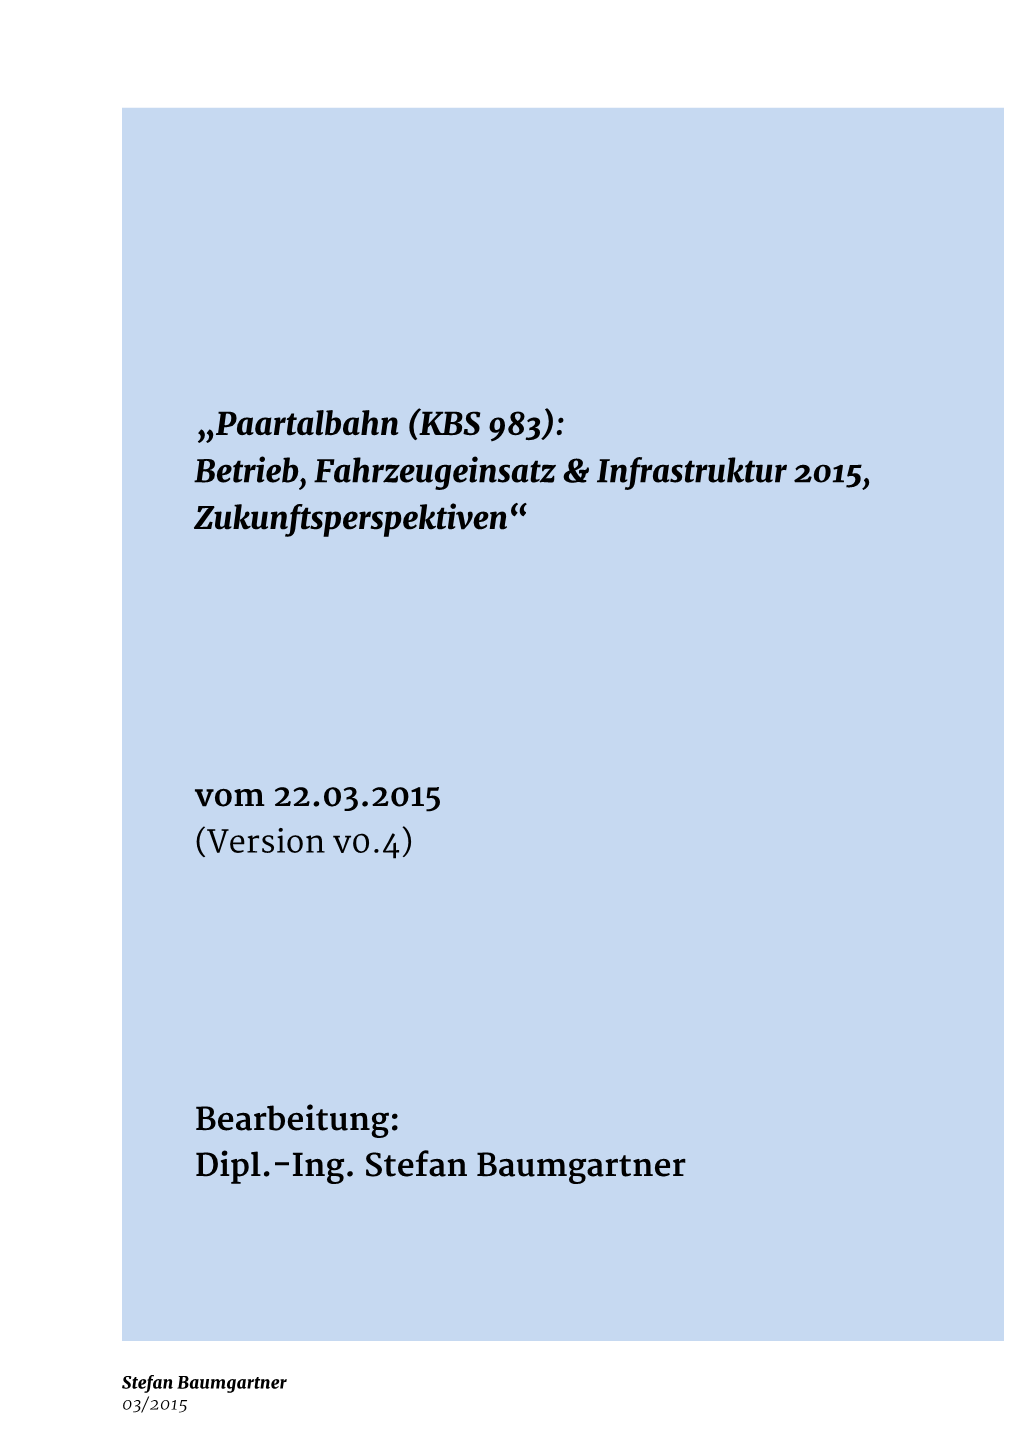 „Paartalbahn (KBS 983): Betrieb, Fahrzeugeinsatz & Infrastruktur